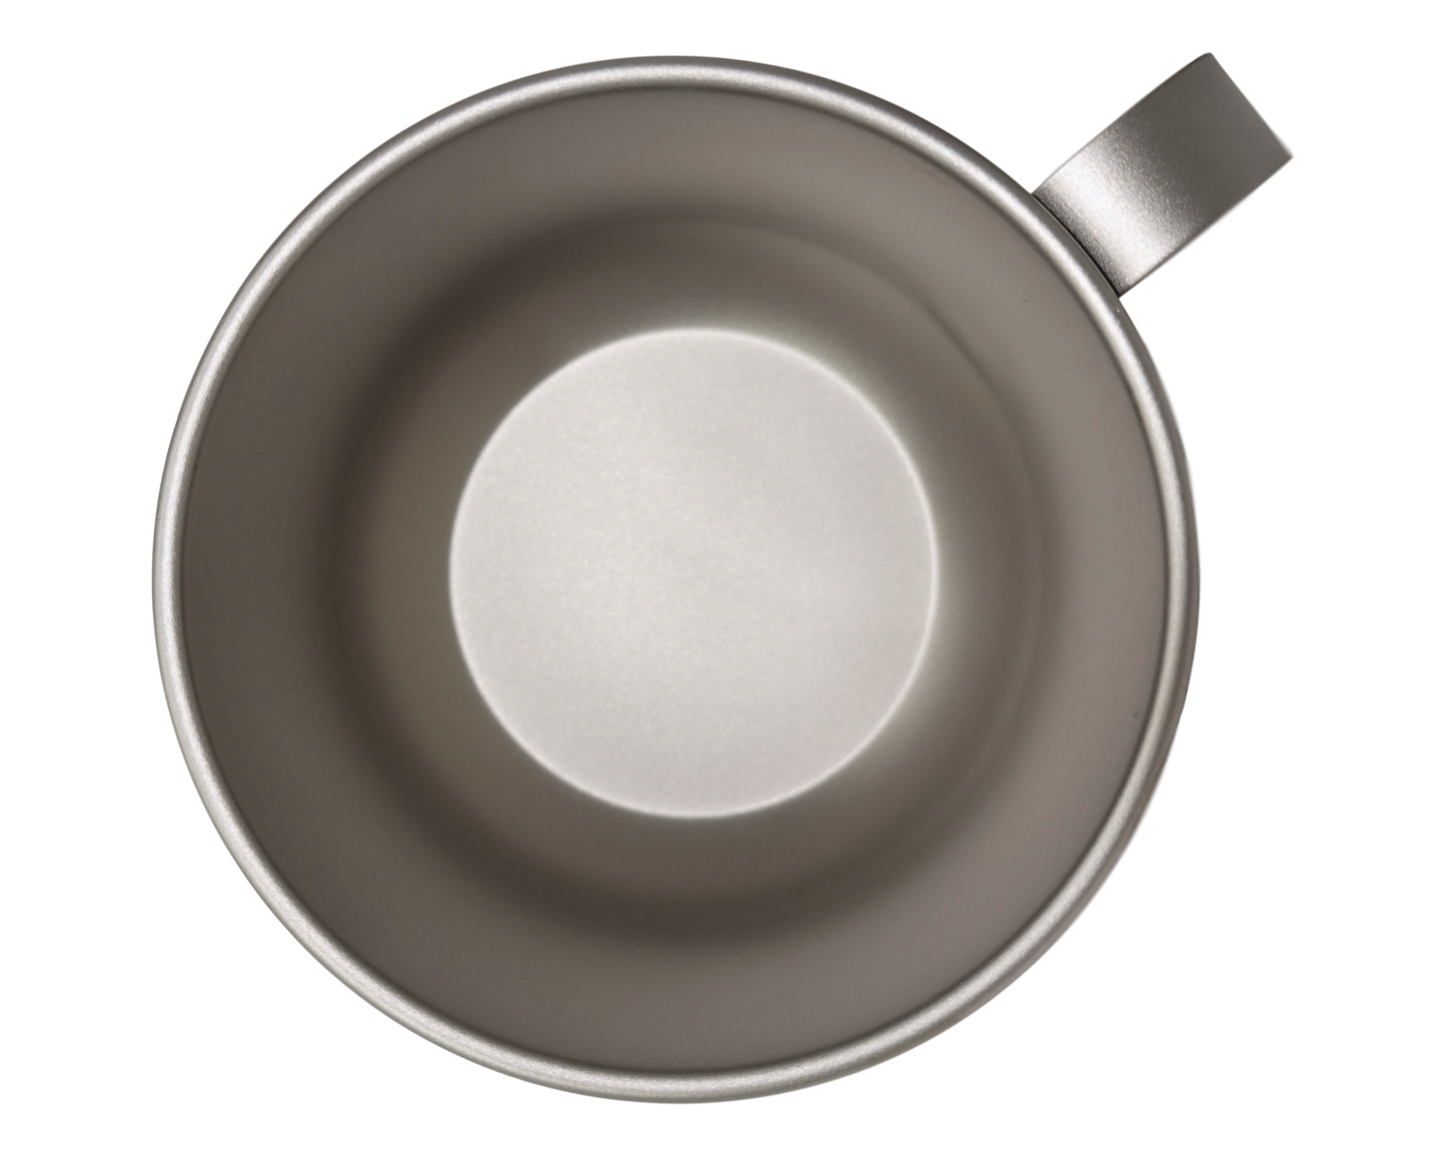 Valtcan Titanbecher, 500 ml, mit stabilem Griff, 16,9 oz Tasse für Kaffee und Tee, 98 g 